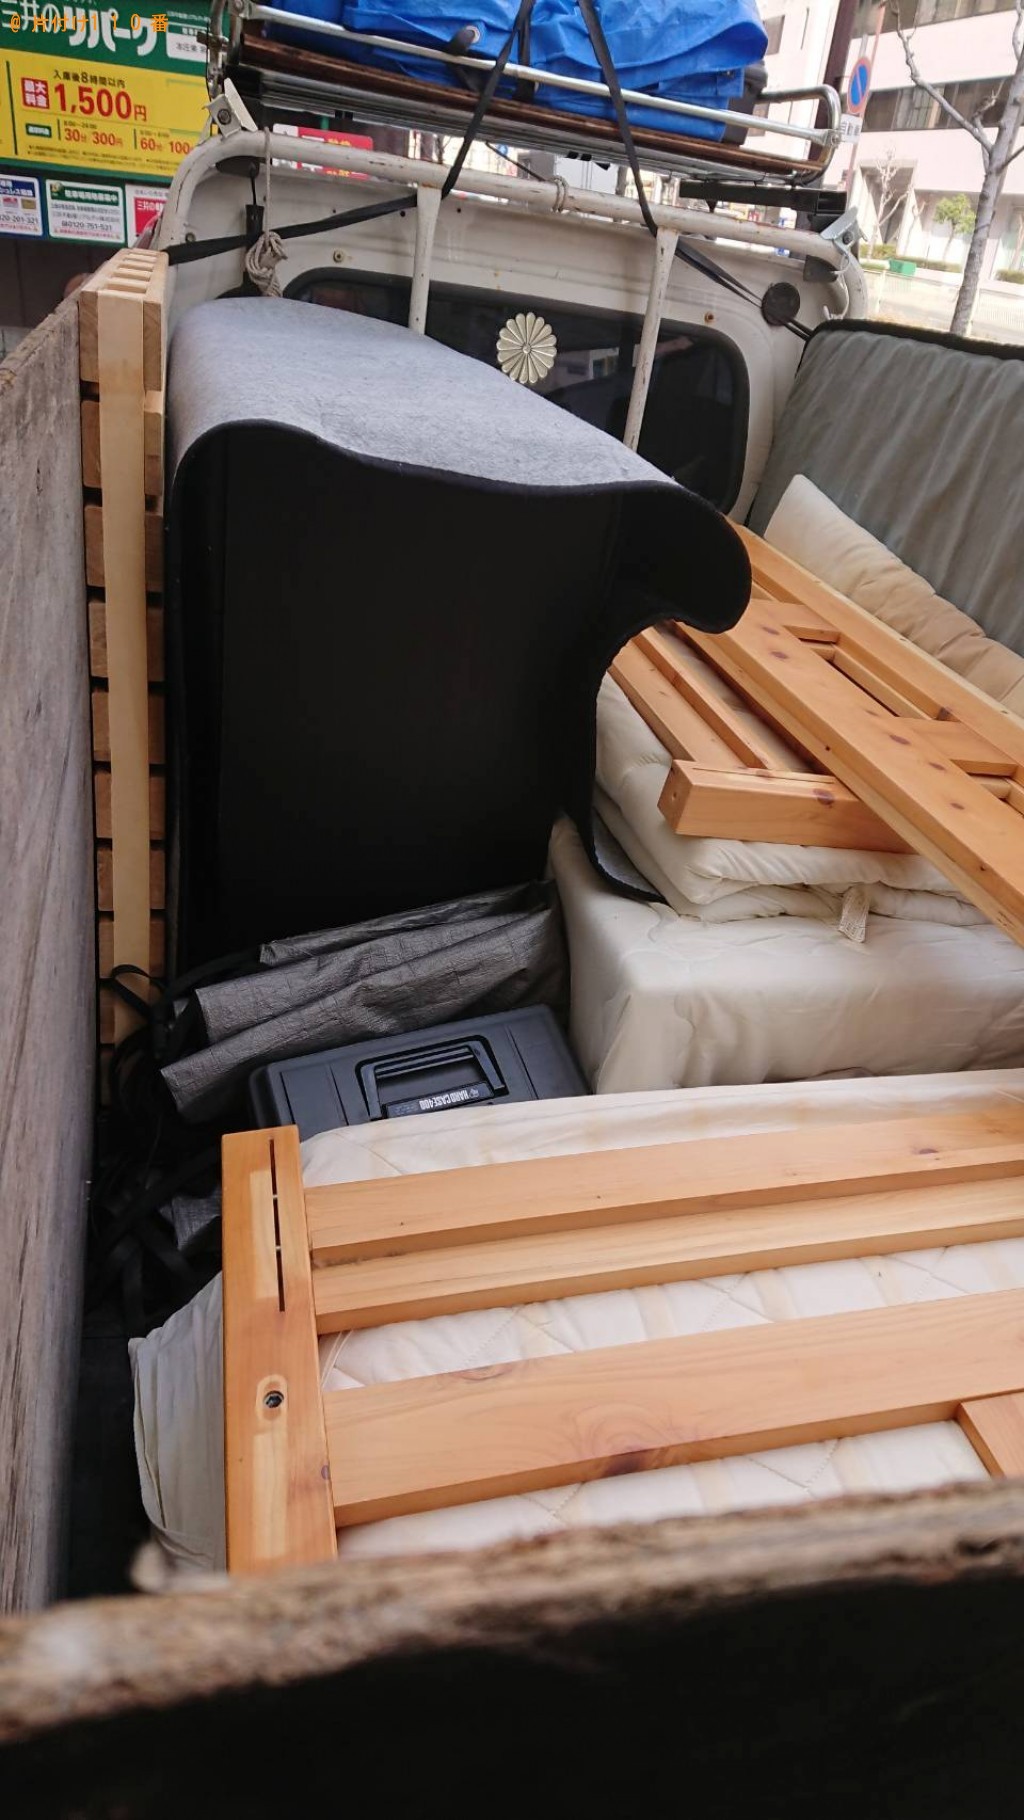 【貝塚市】遺品整理でカーペット、整理タンス、シングルベッド等の回収